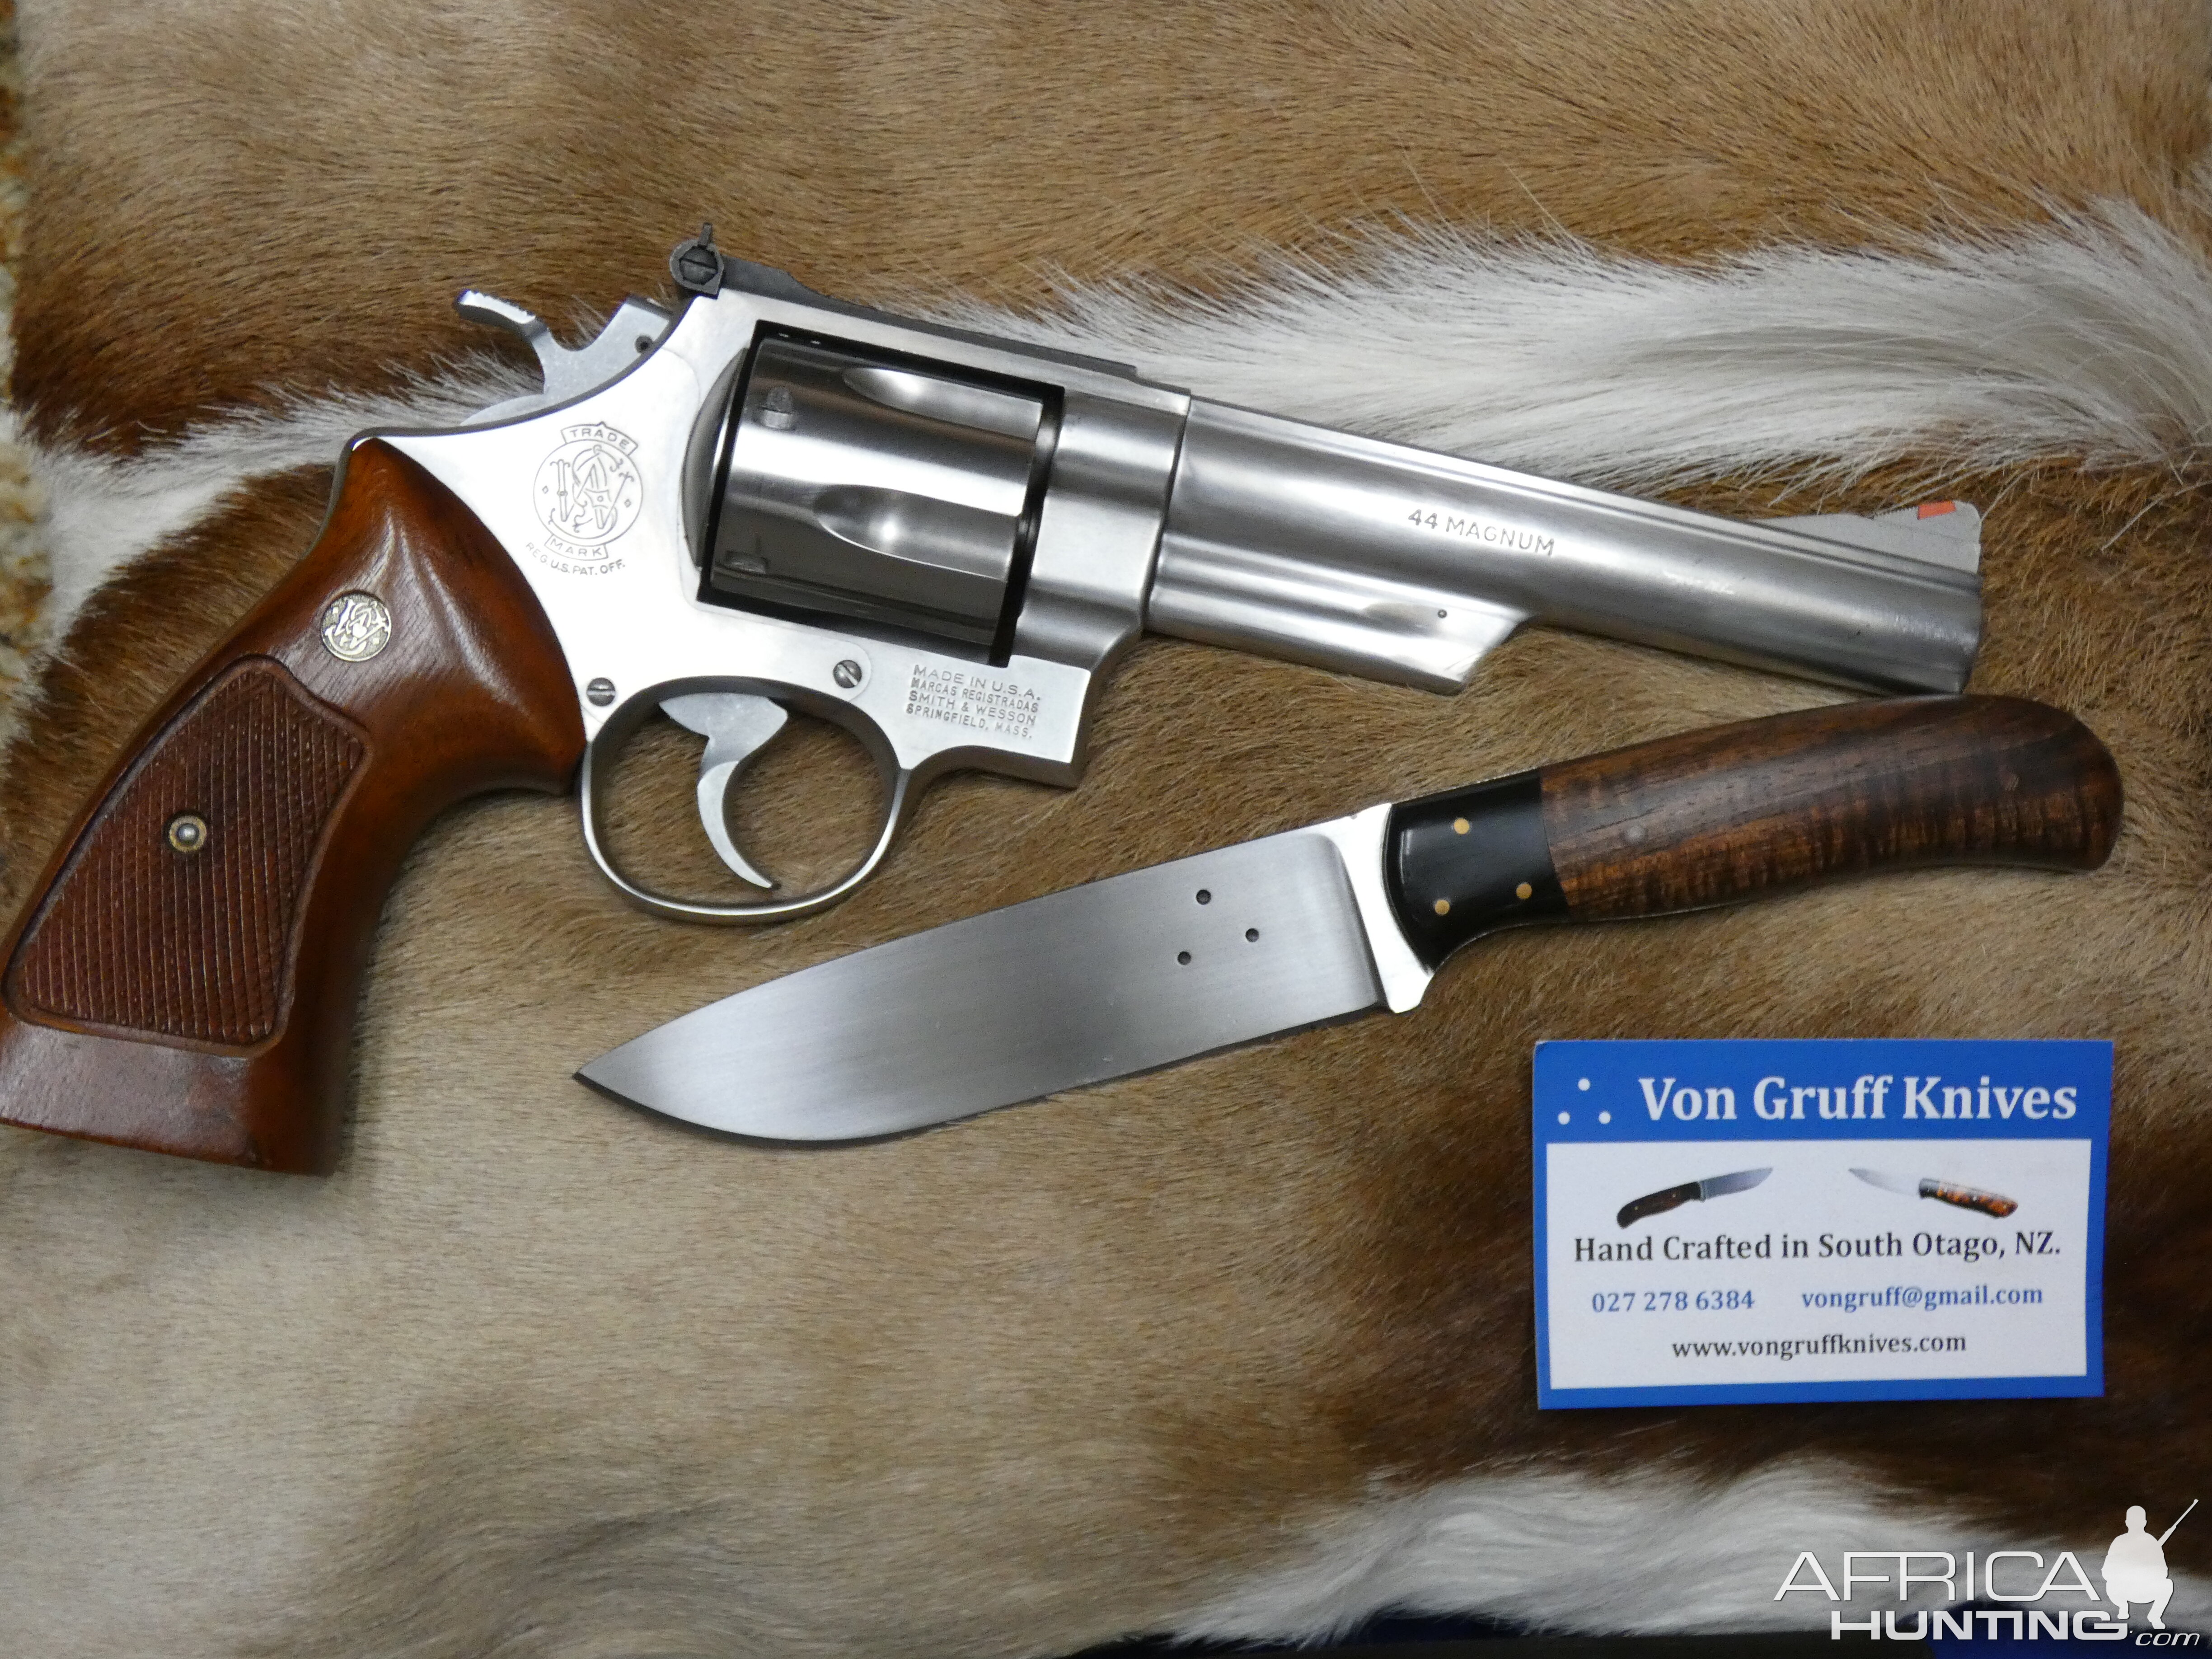 44 Magnum Handgun & Von Guff Knife